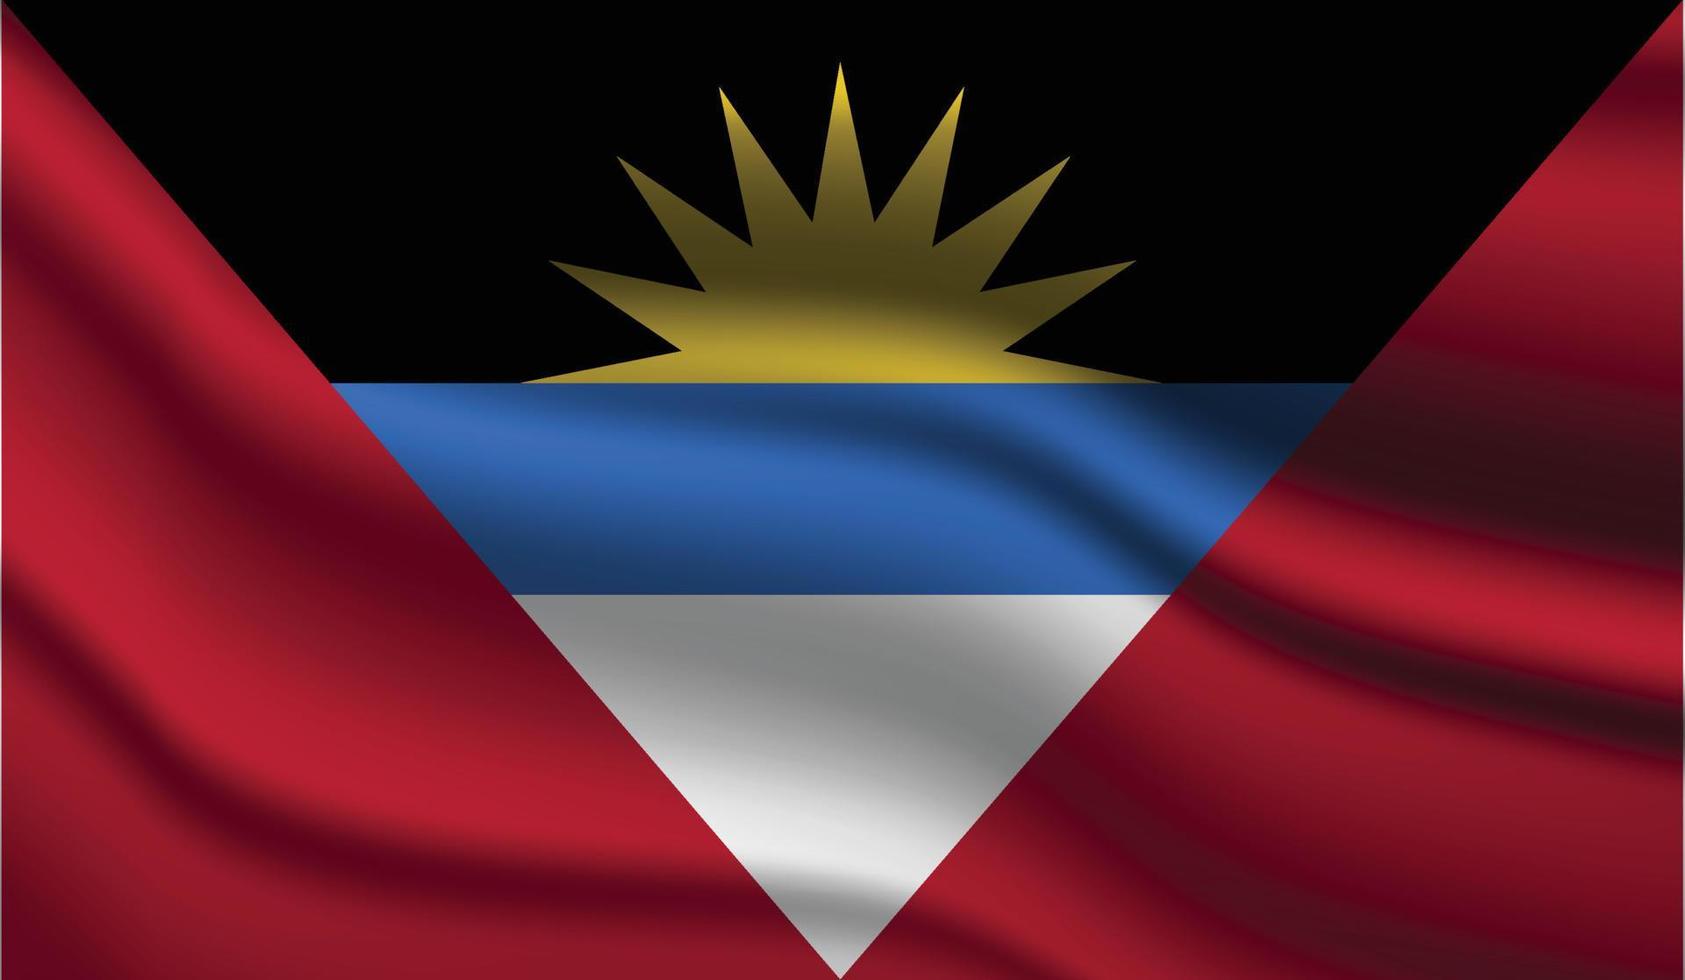 antigua och barbuda realistisk modern flaggdesign vektor